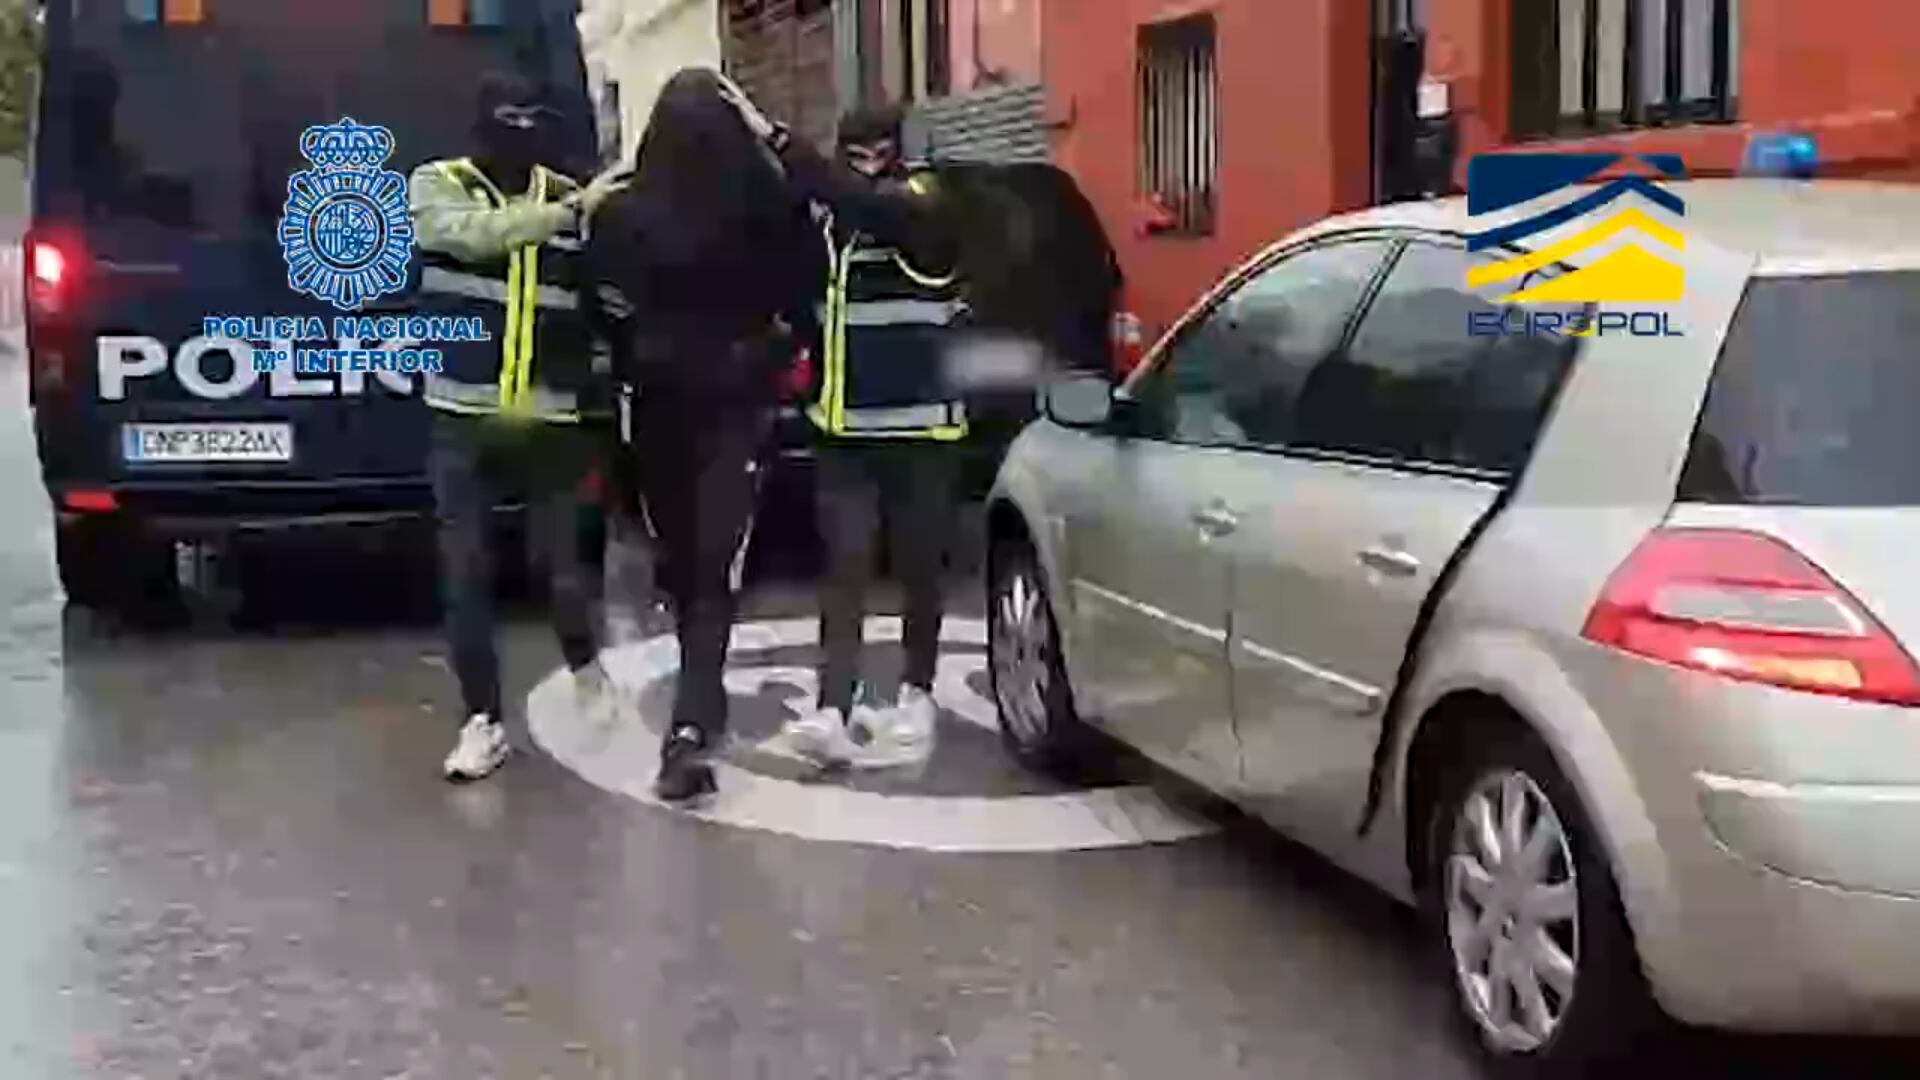 Los agentes detienen y conducen a un coche a uno de los presuntos yihadistas. (Policía Nacional)